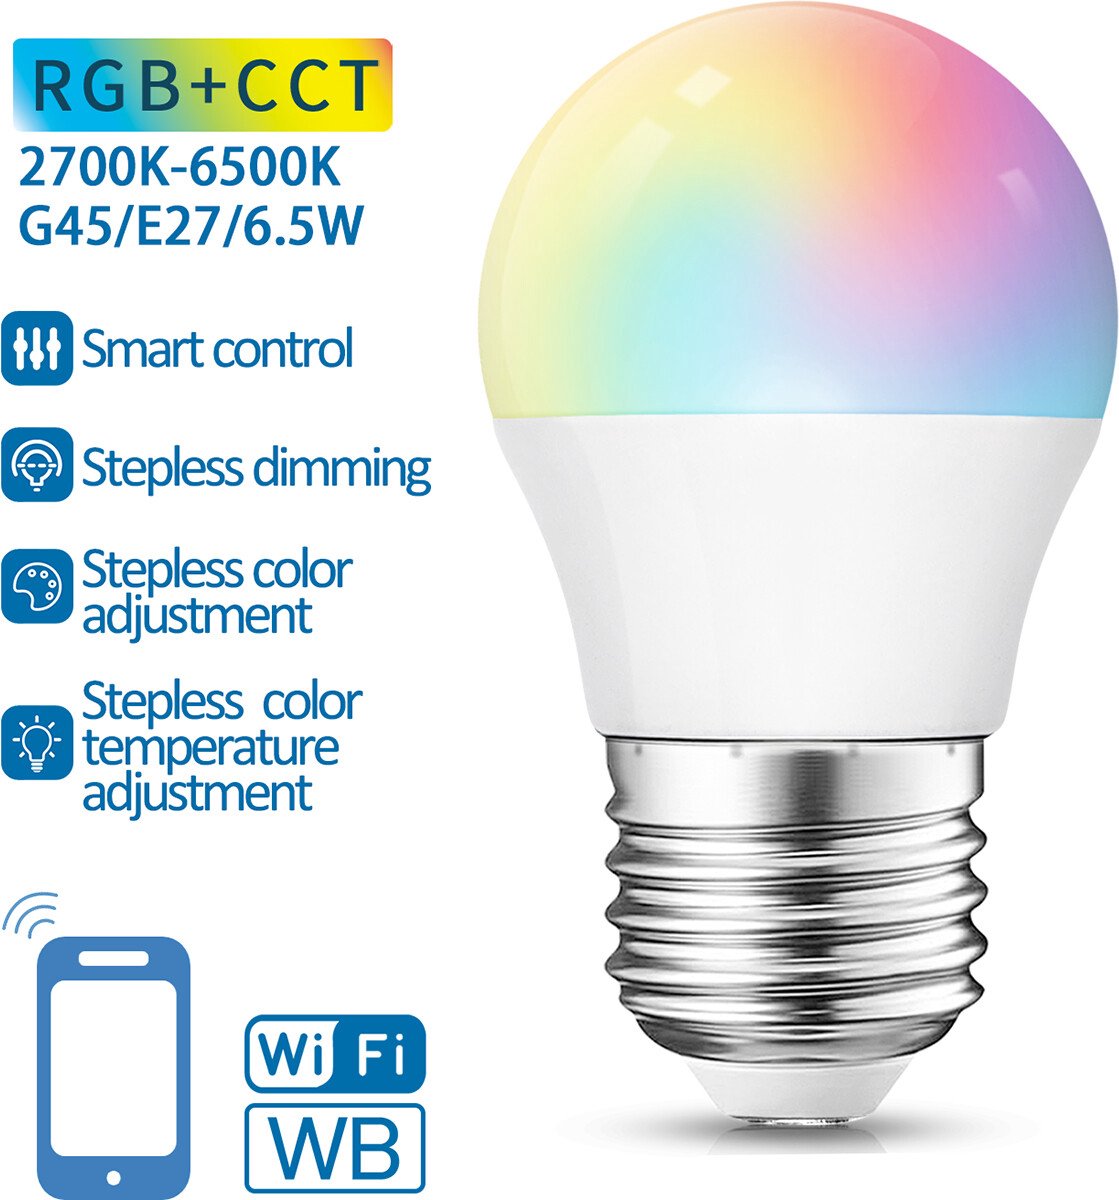 Aigostar - Ampoules LED G45 de 7W, Culot E14, Lumière Blanche